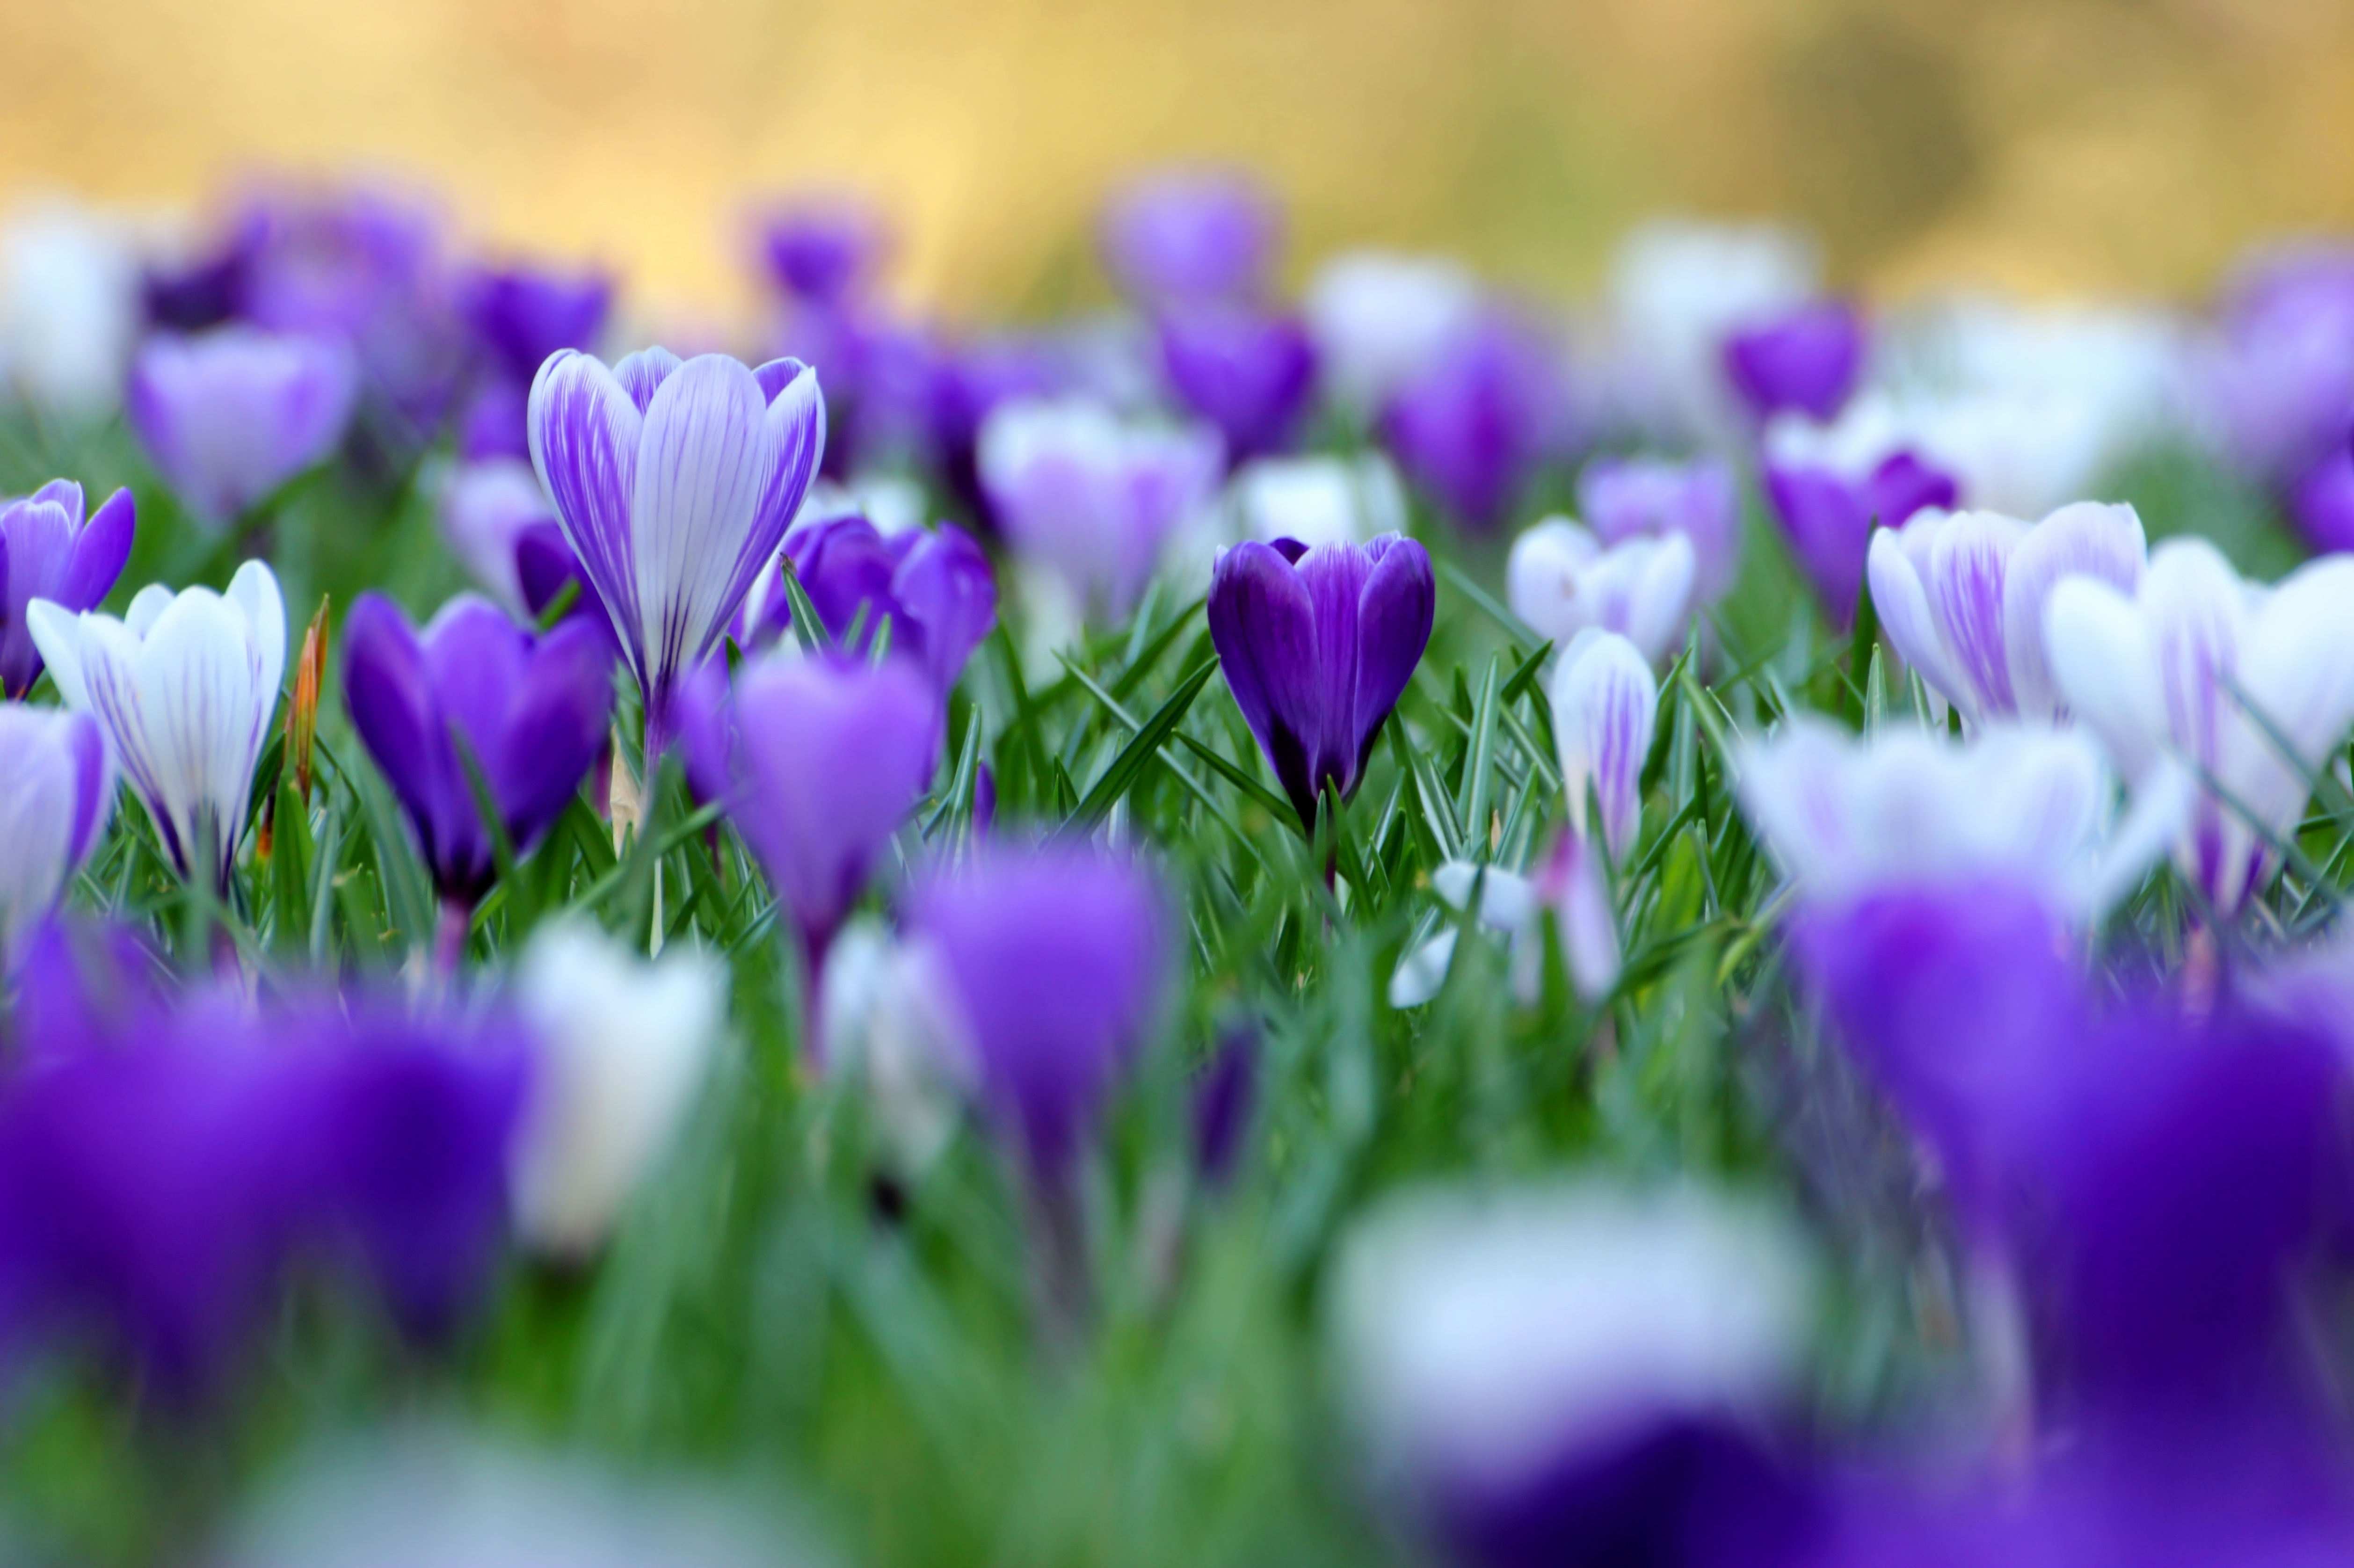 saffron wallpaper,flower,flowering plant,plant,tommie crocus,purple